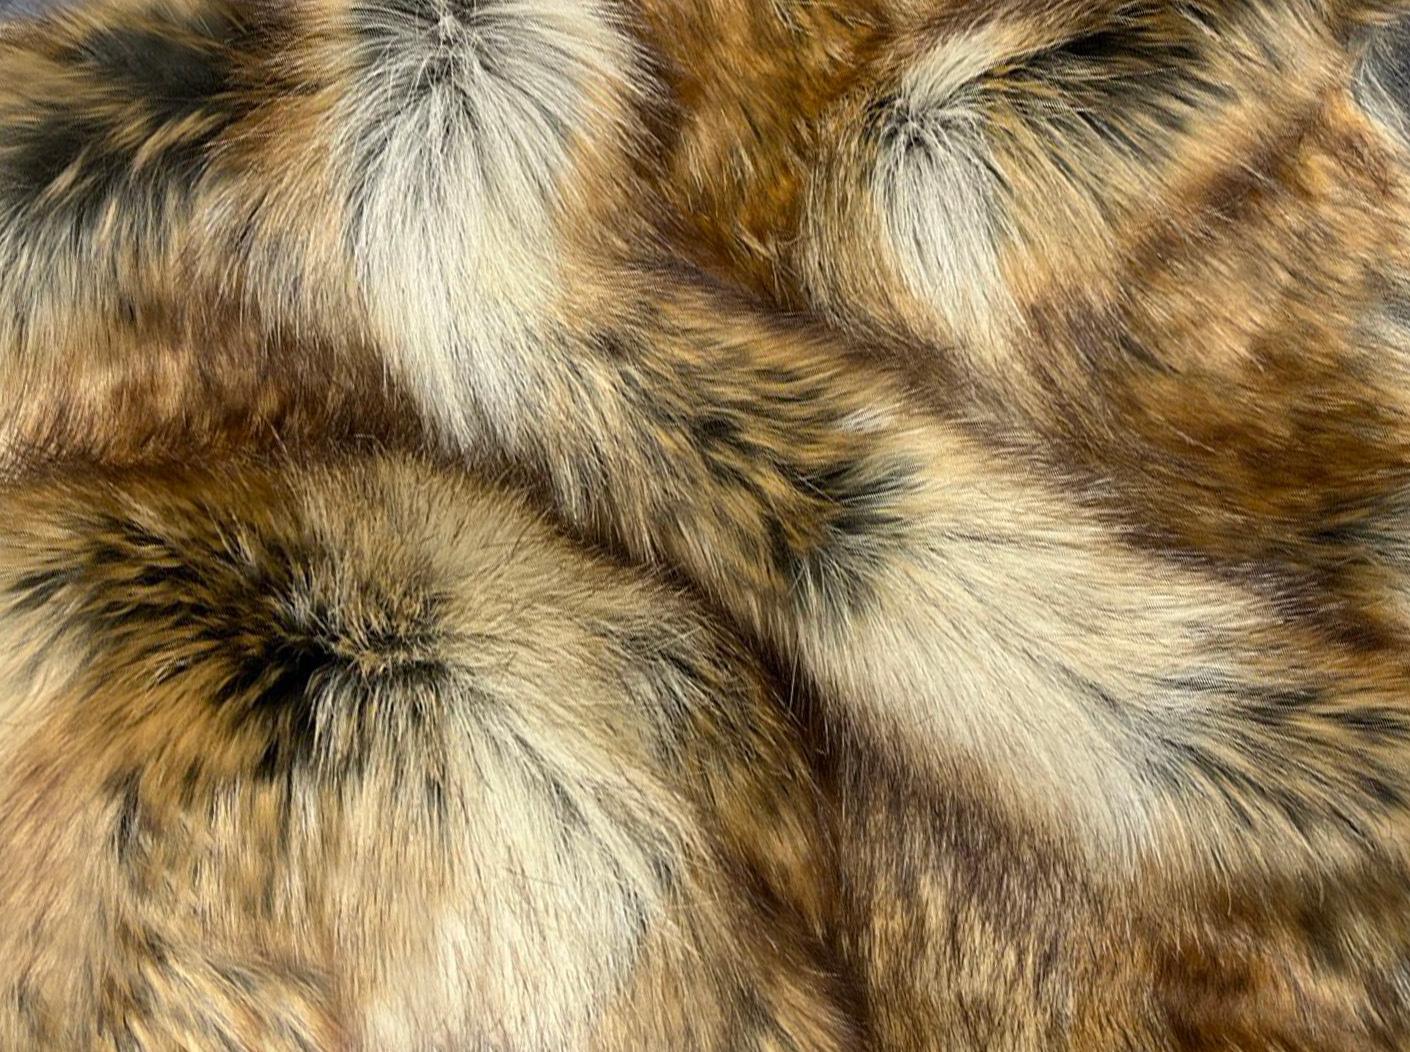 Экомех Mirofox коллекции FOXY - Amber wolf / цвет - Матовый янтарь